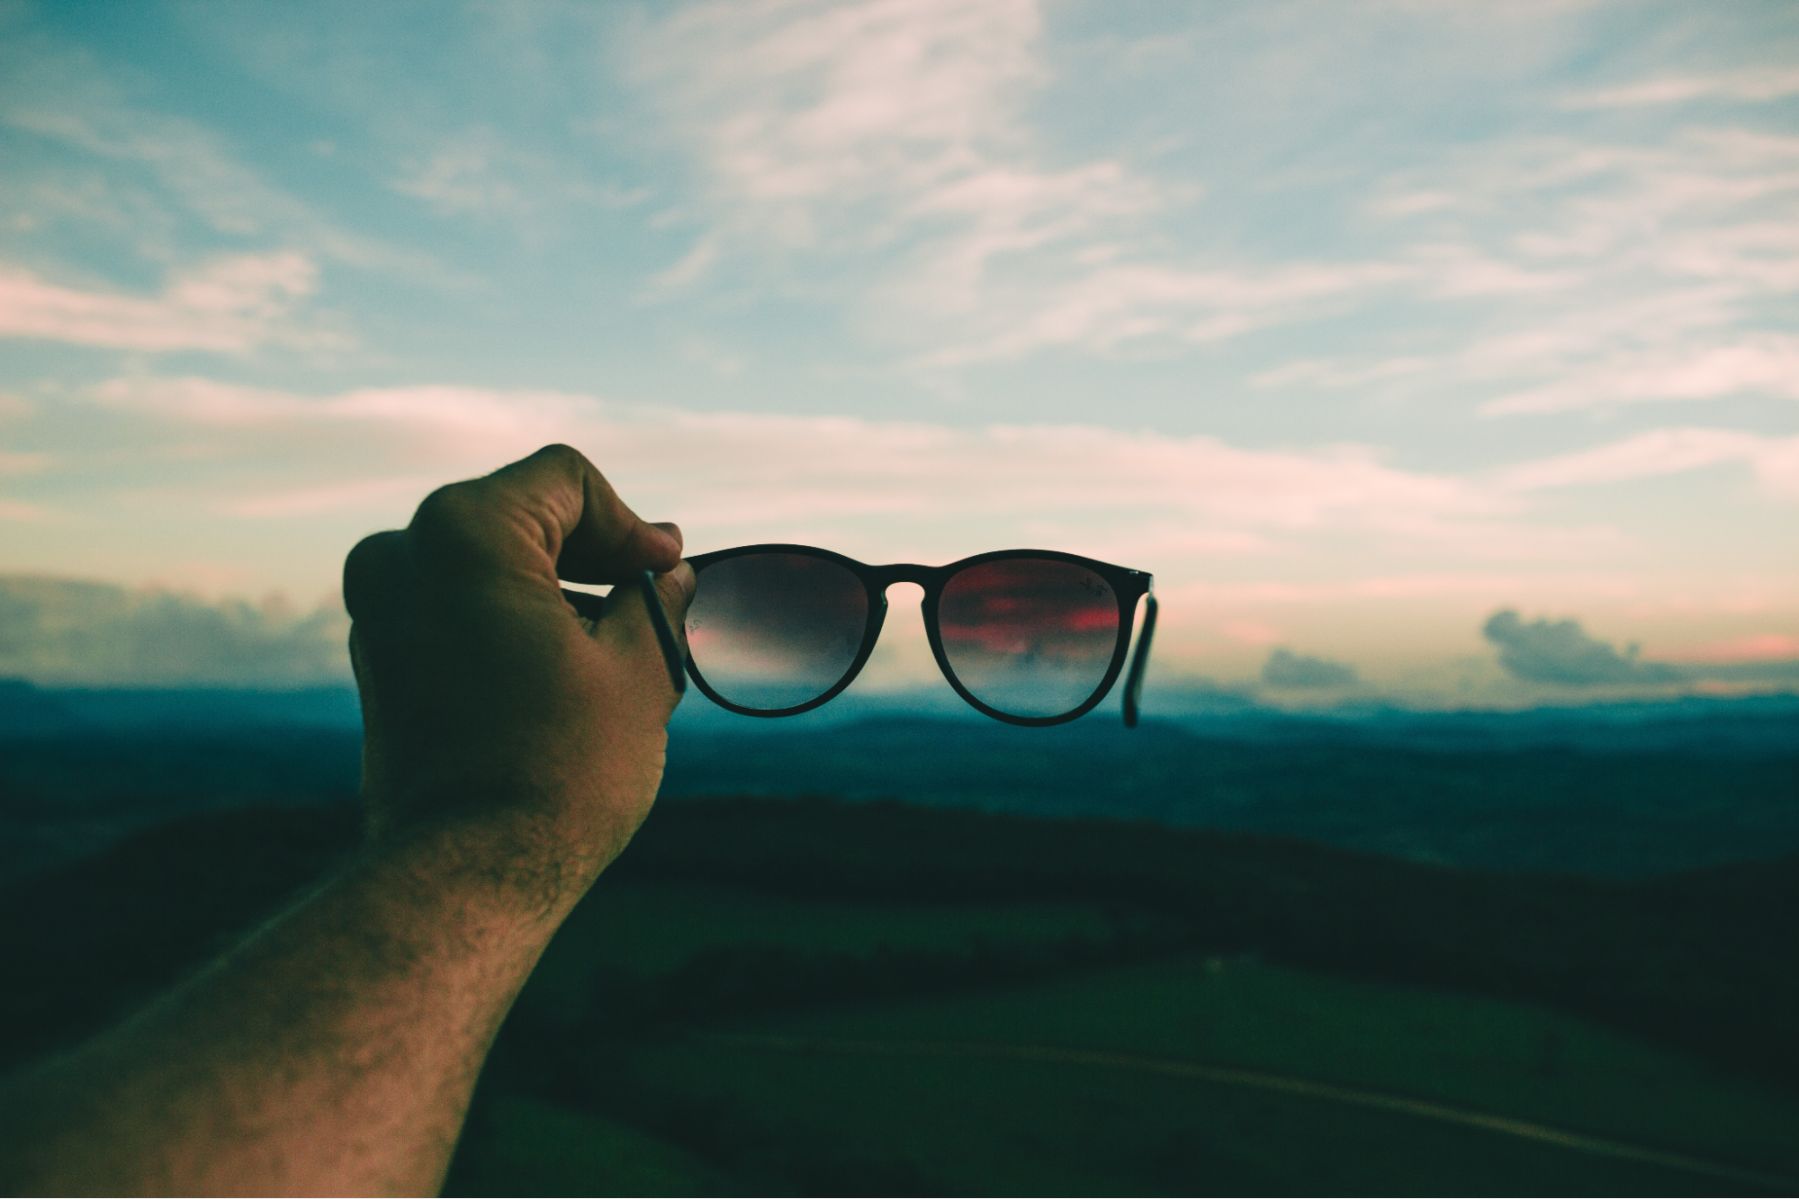 Polarized vs Non-Polarized Sunglasses - Learn the True Difference